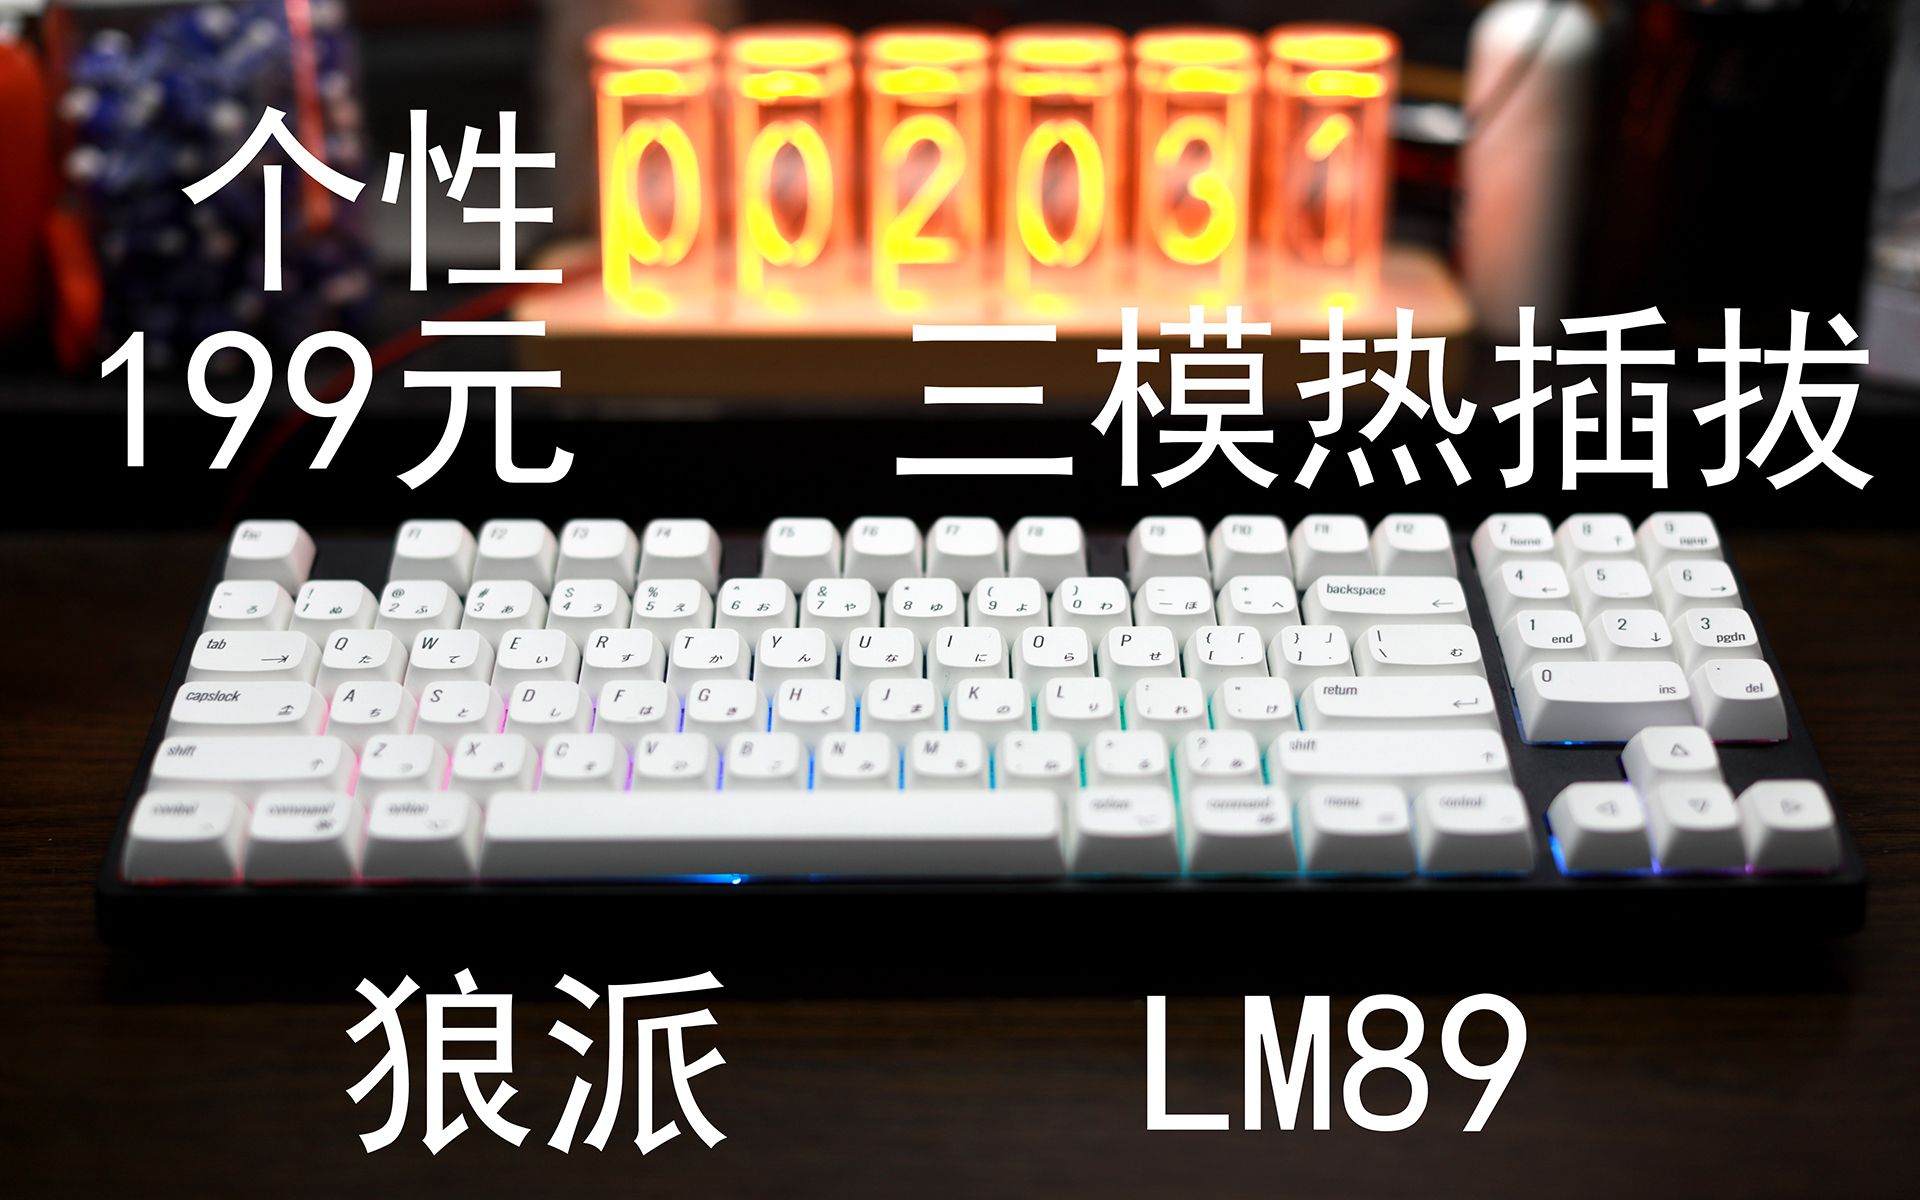 狼派lm89机械键盘使用报告 - 知乎